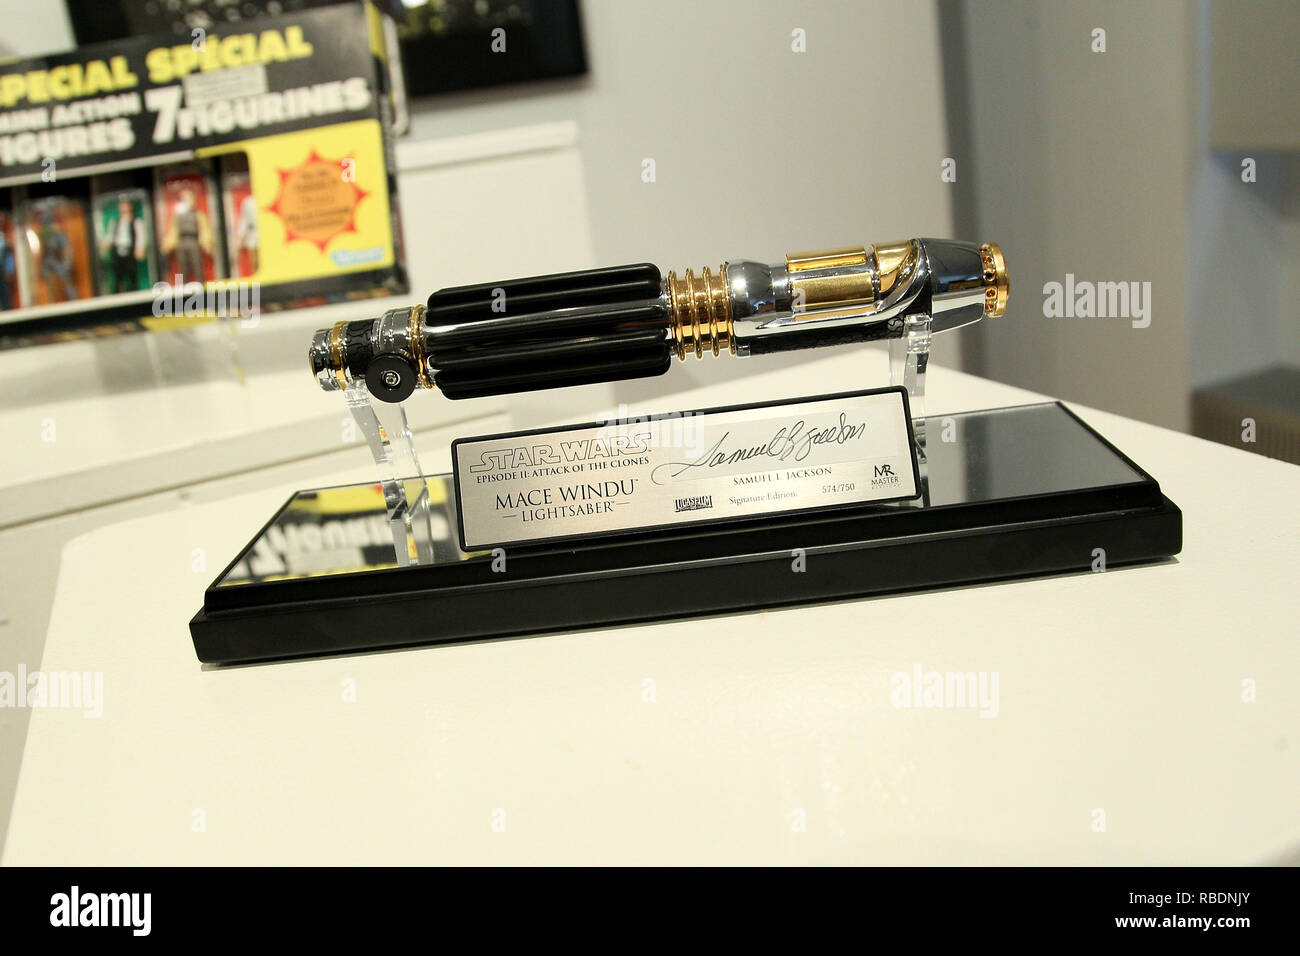 NEW YORK, NY - 02 DÉCEMBRE : Signé sabre laser Star Wars Luke Skywalker sur  l'affichage à "Retour de Nigo' La première vente aux enchères de 'Star  Wars' de collection chez Sotheby's